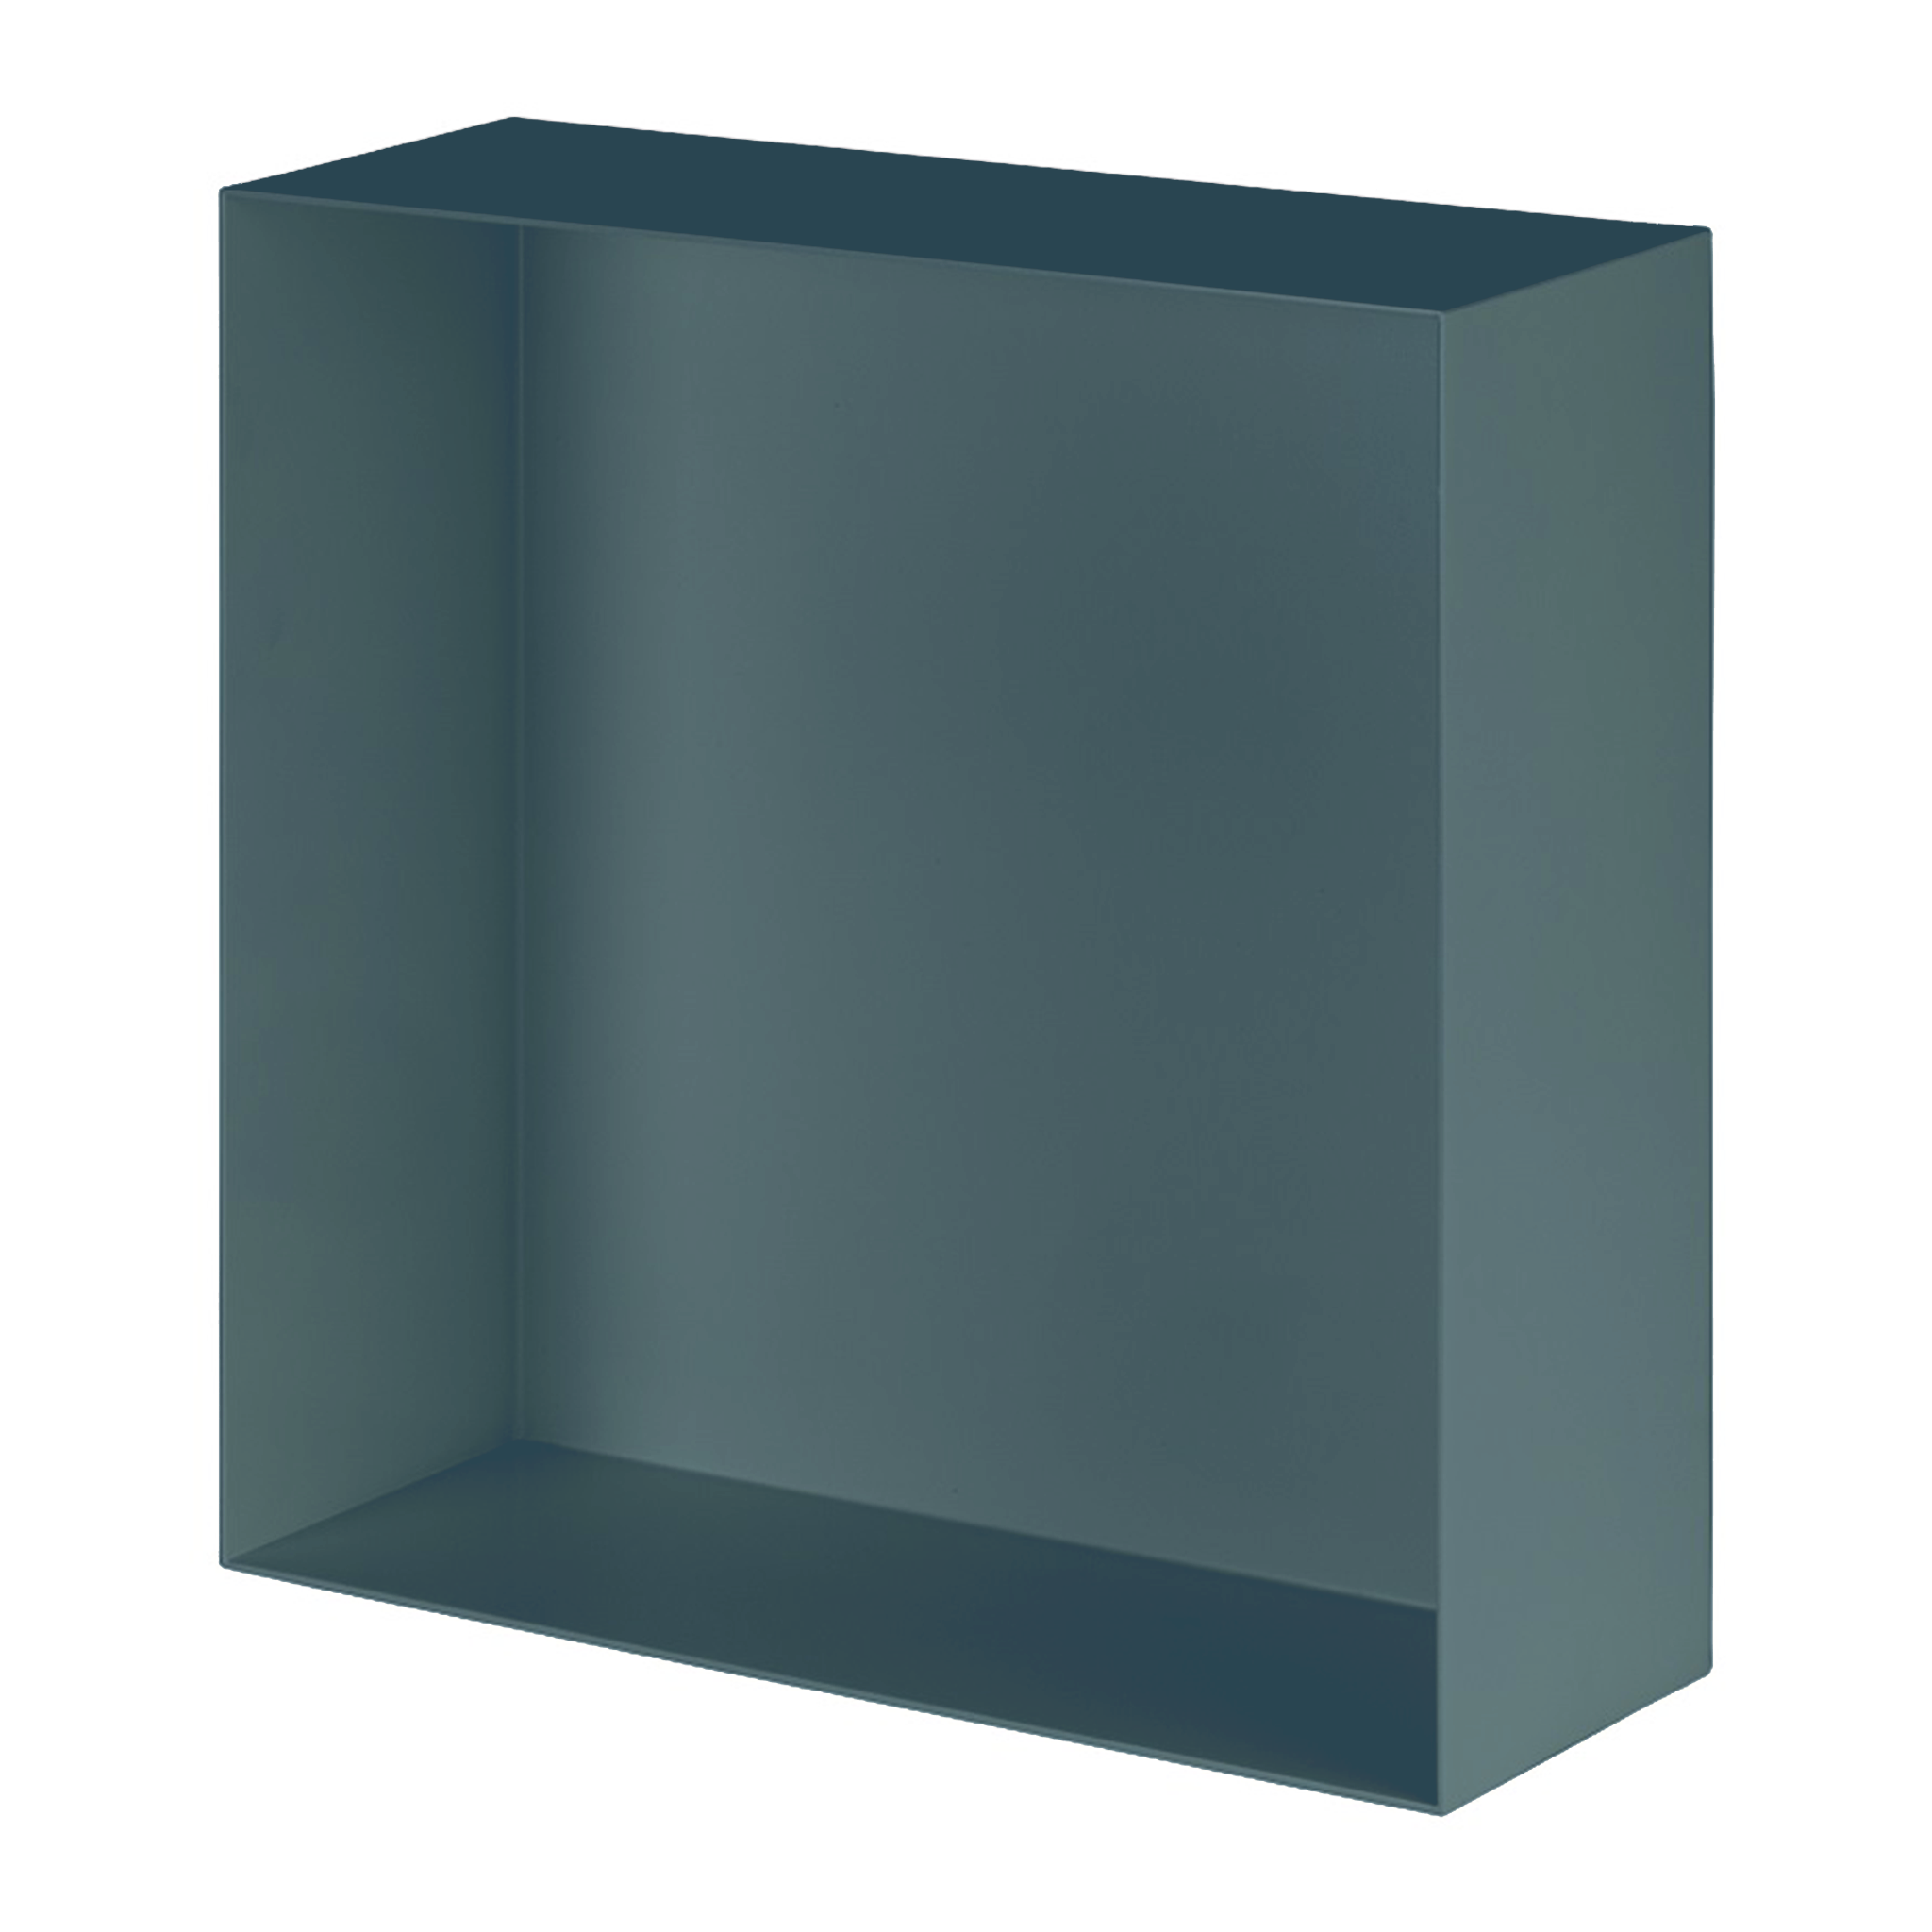 Valli Home – V-Box, Nicchia portaoggetti in Metallo smaltato color Blu KK29, Misura 40X40 P. 10 cm – V-BOX.MLLO.40X40.29